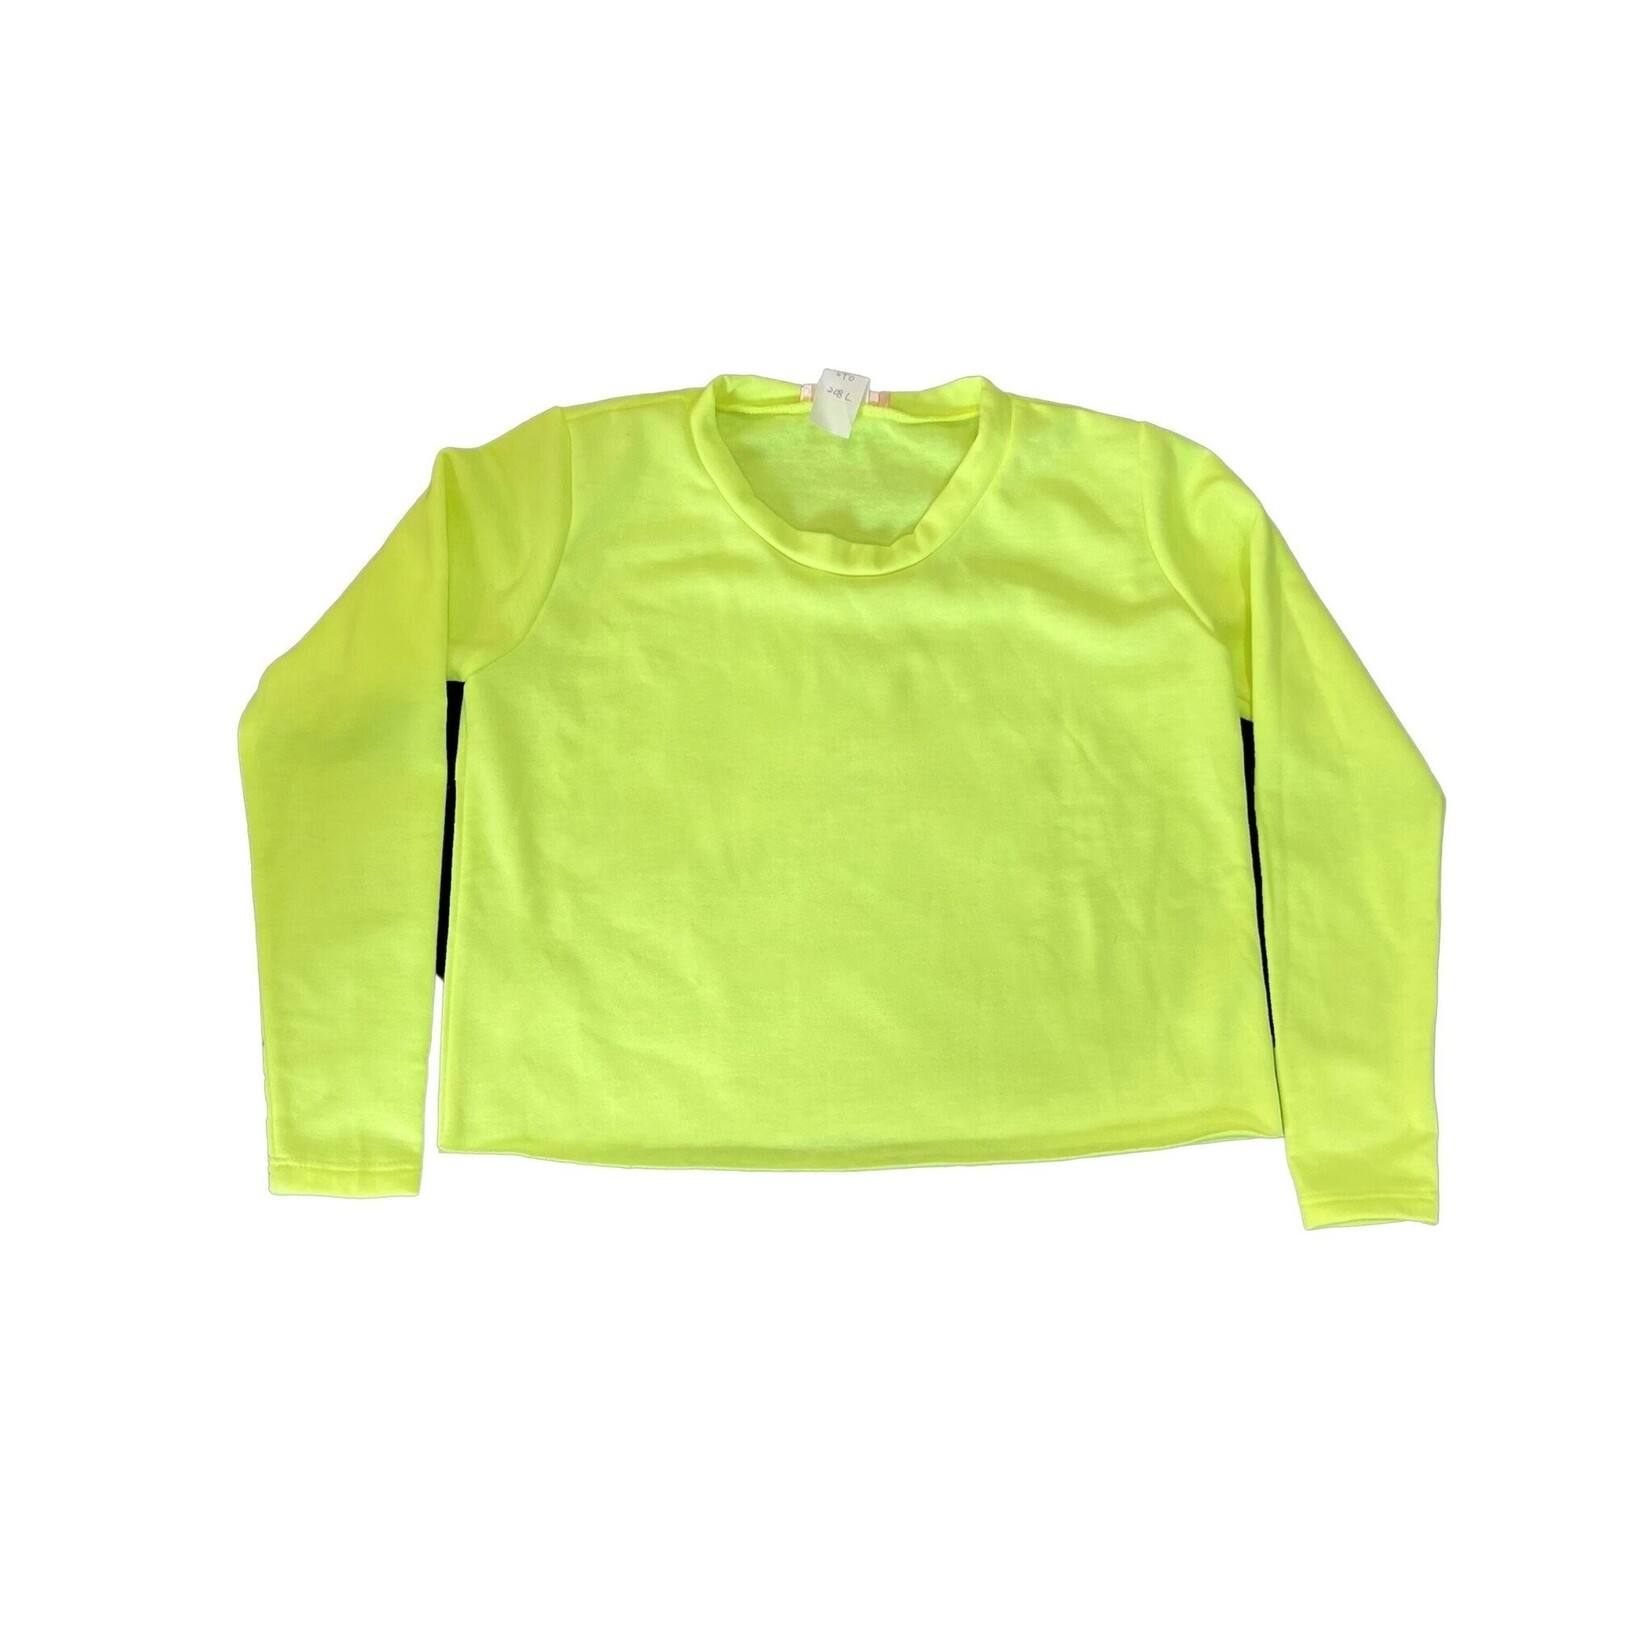 Tweenstyle Neon Fleece Top